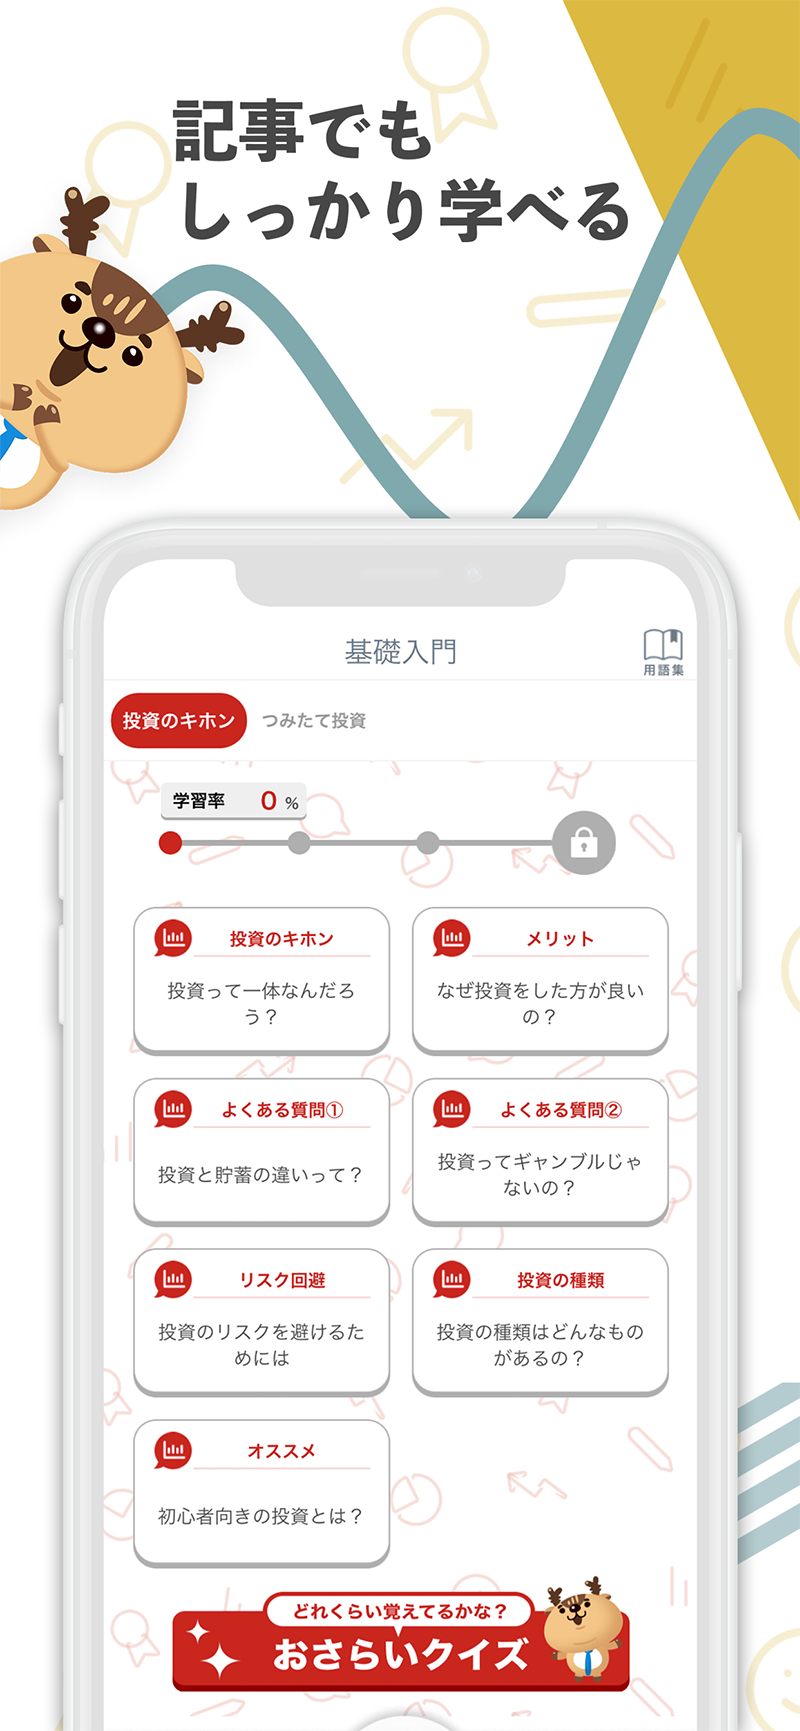 つみたて投資学習アプリ Powered by トウシカ4